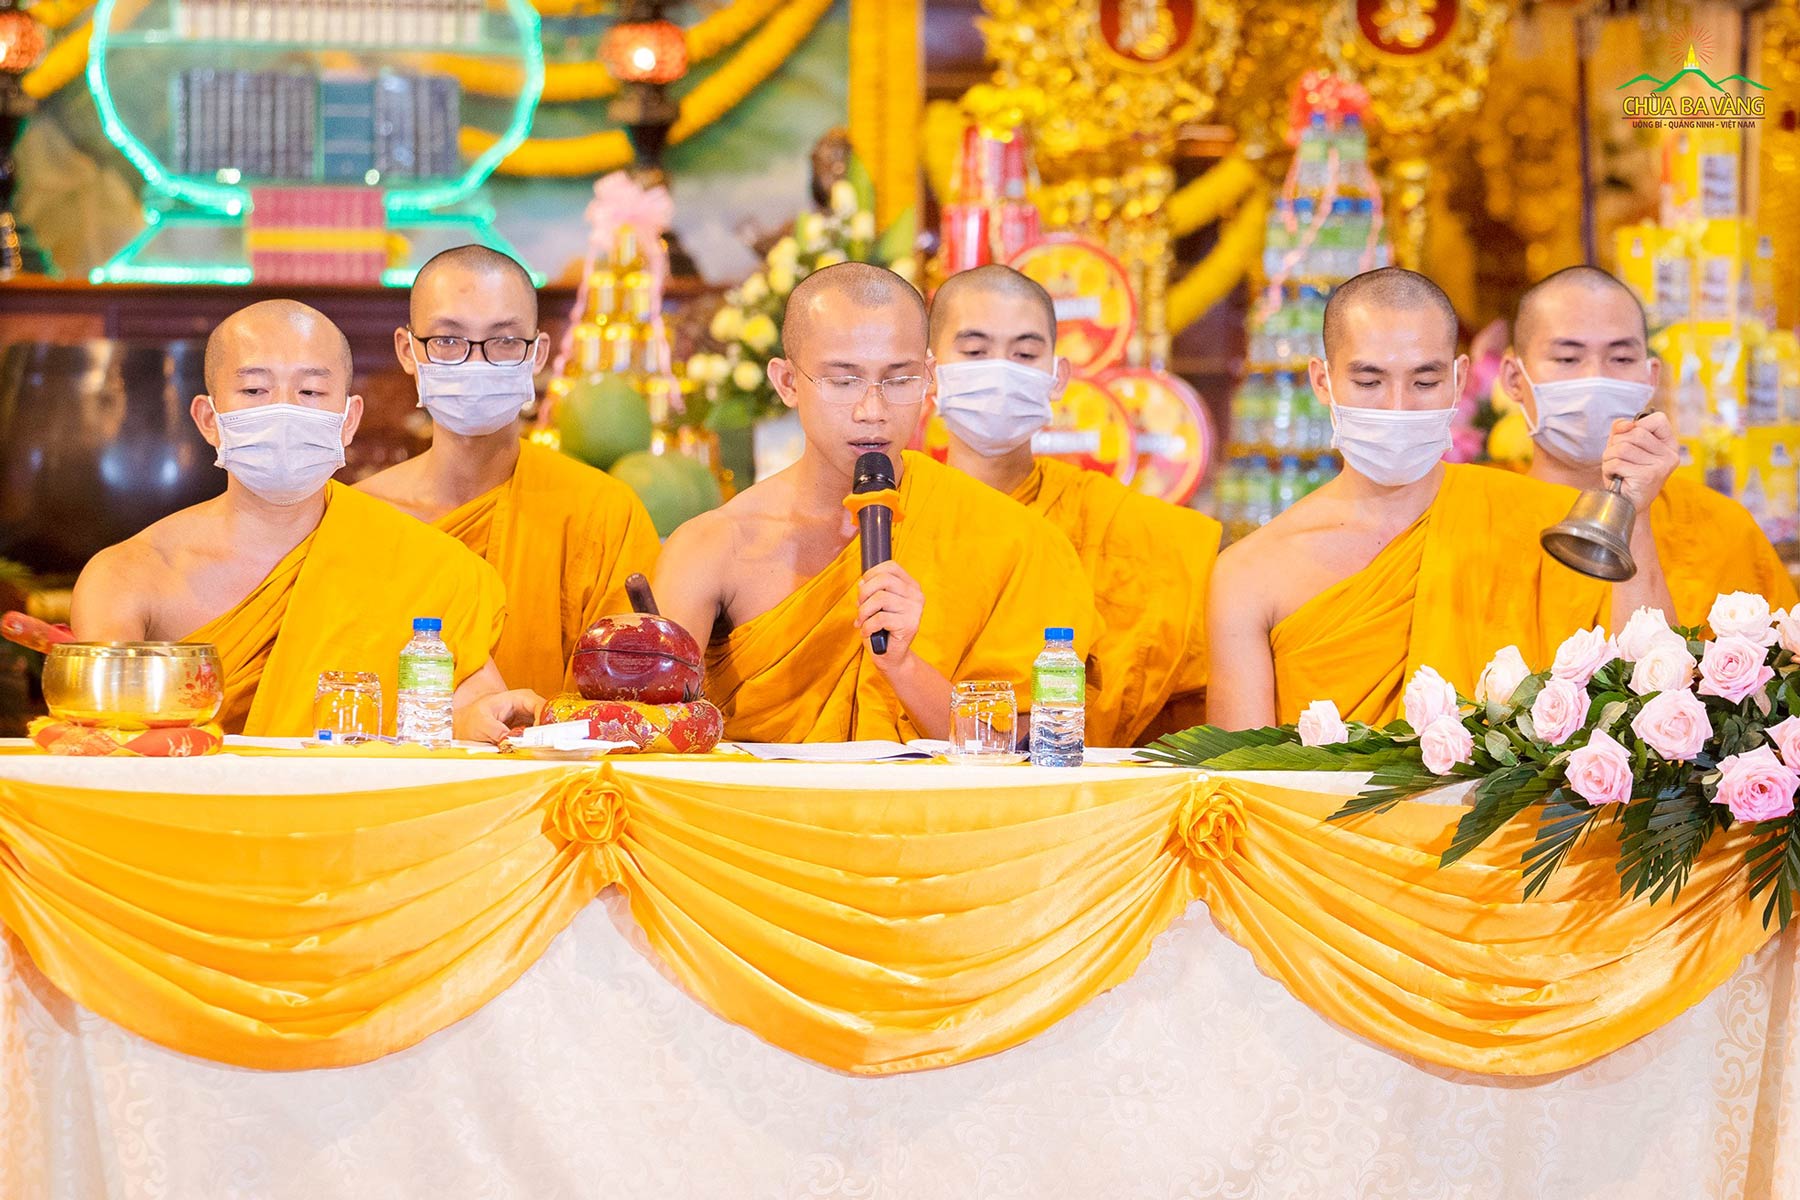 Nương năng lực của mười phương Tam Bảo, chư Tăng triệu thỉnh vong linh hài nhi của các tín chủ đã đăng ký với nhà chùa về dự lễ.